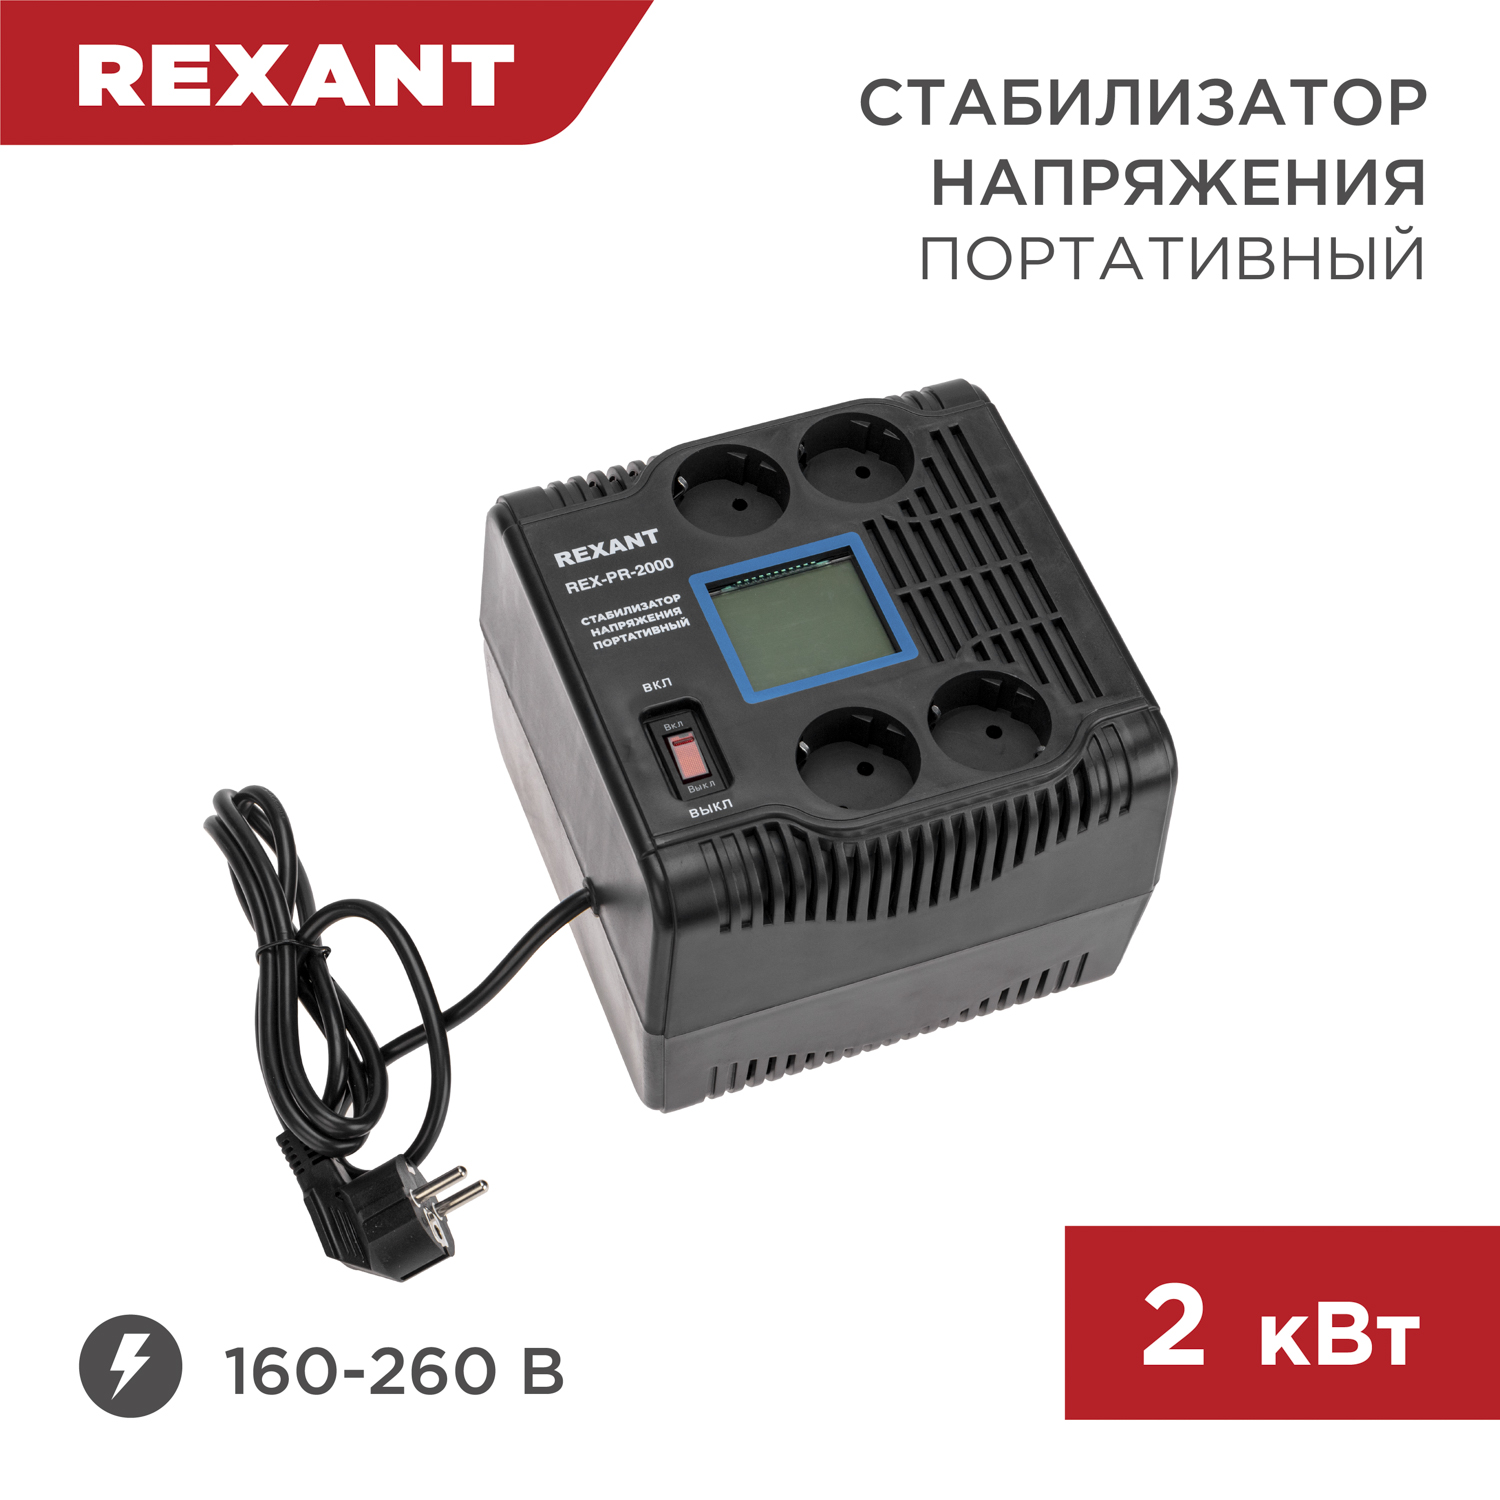 Стабилизатор напряжения портативный REXANT REX-PR-2000 11-5032 разогреватель для сухого горючего портативный maclay